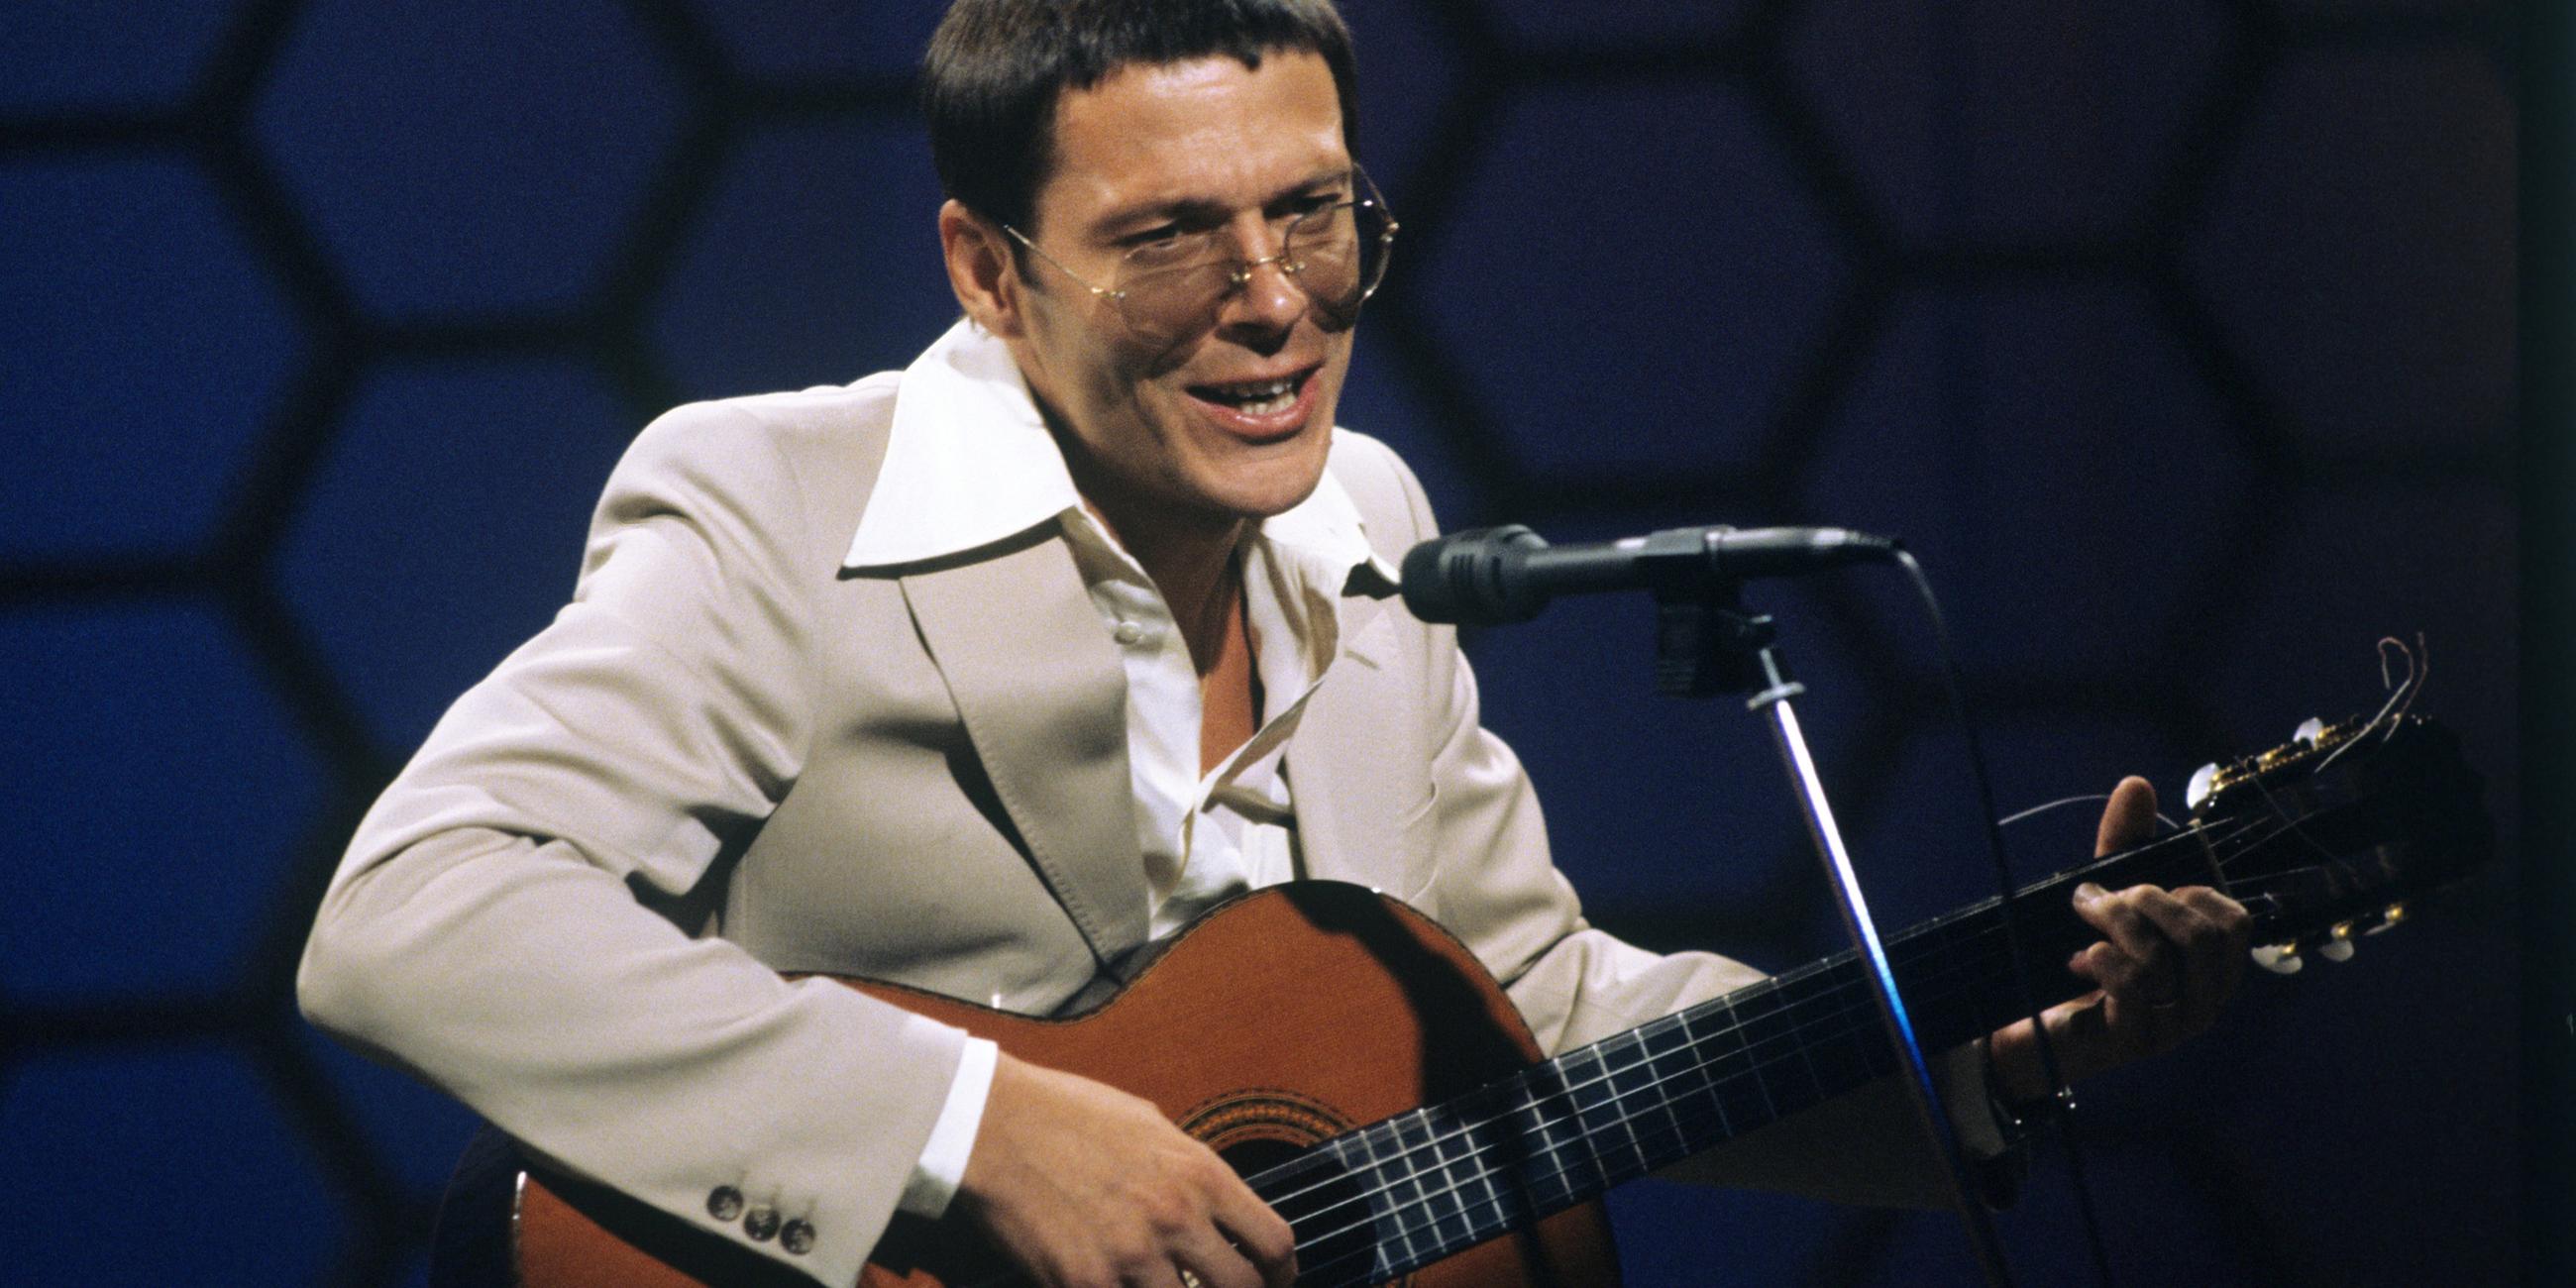 Reinhard Mey bei einem Auftritt in den 70er Jahren